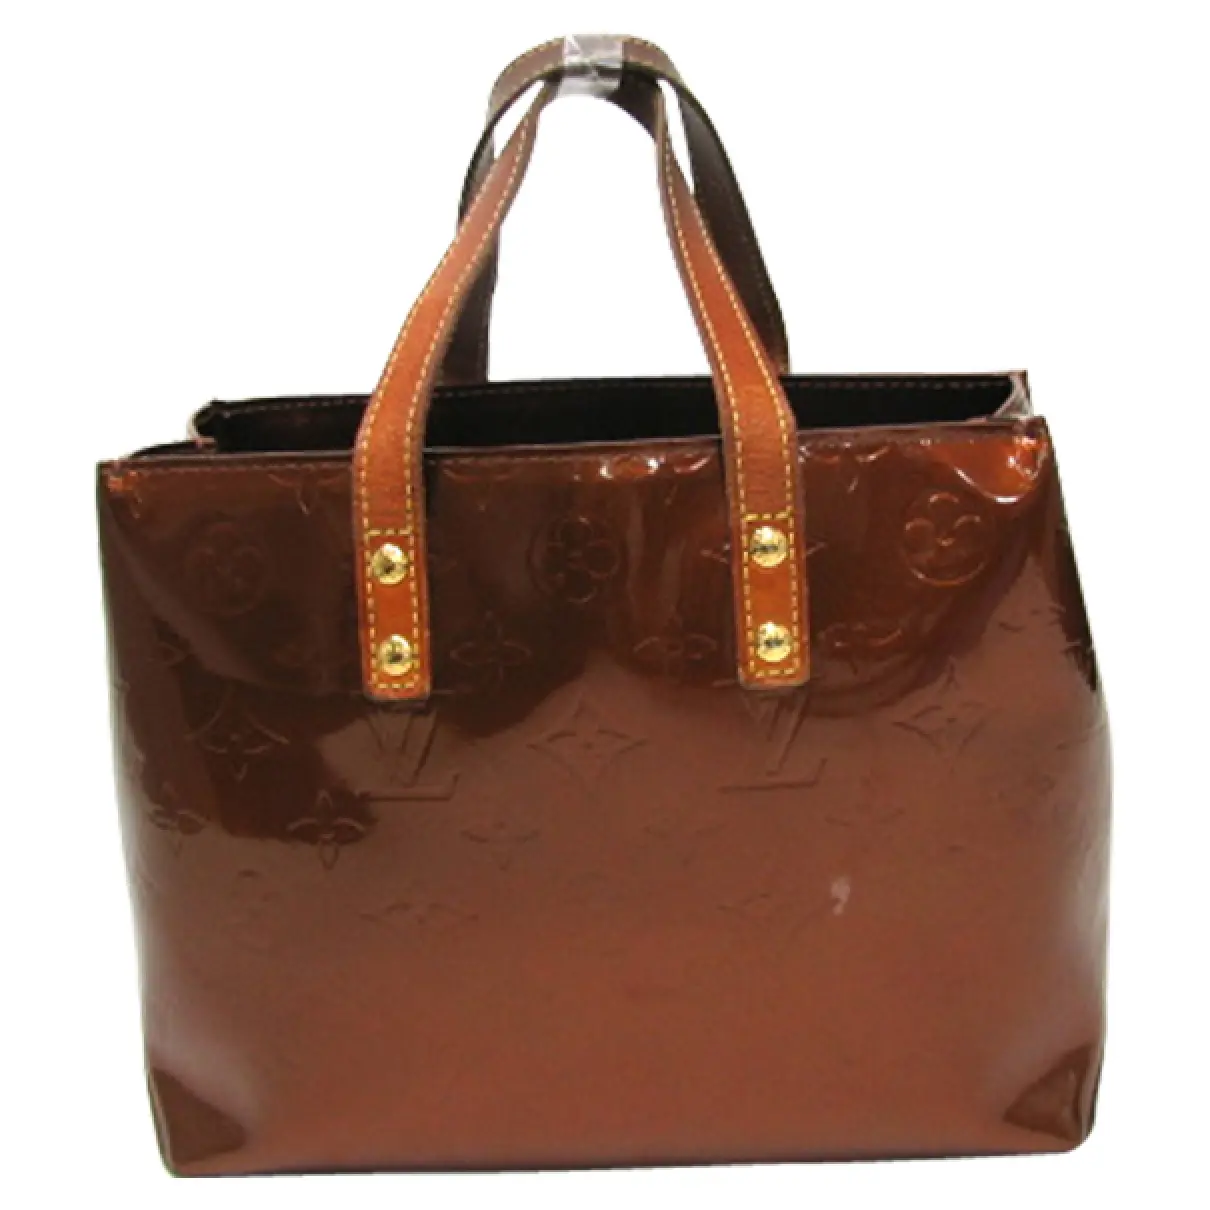 Brown Patent leather Handbag Louis Vuitton - Vintage